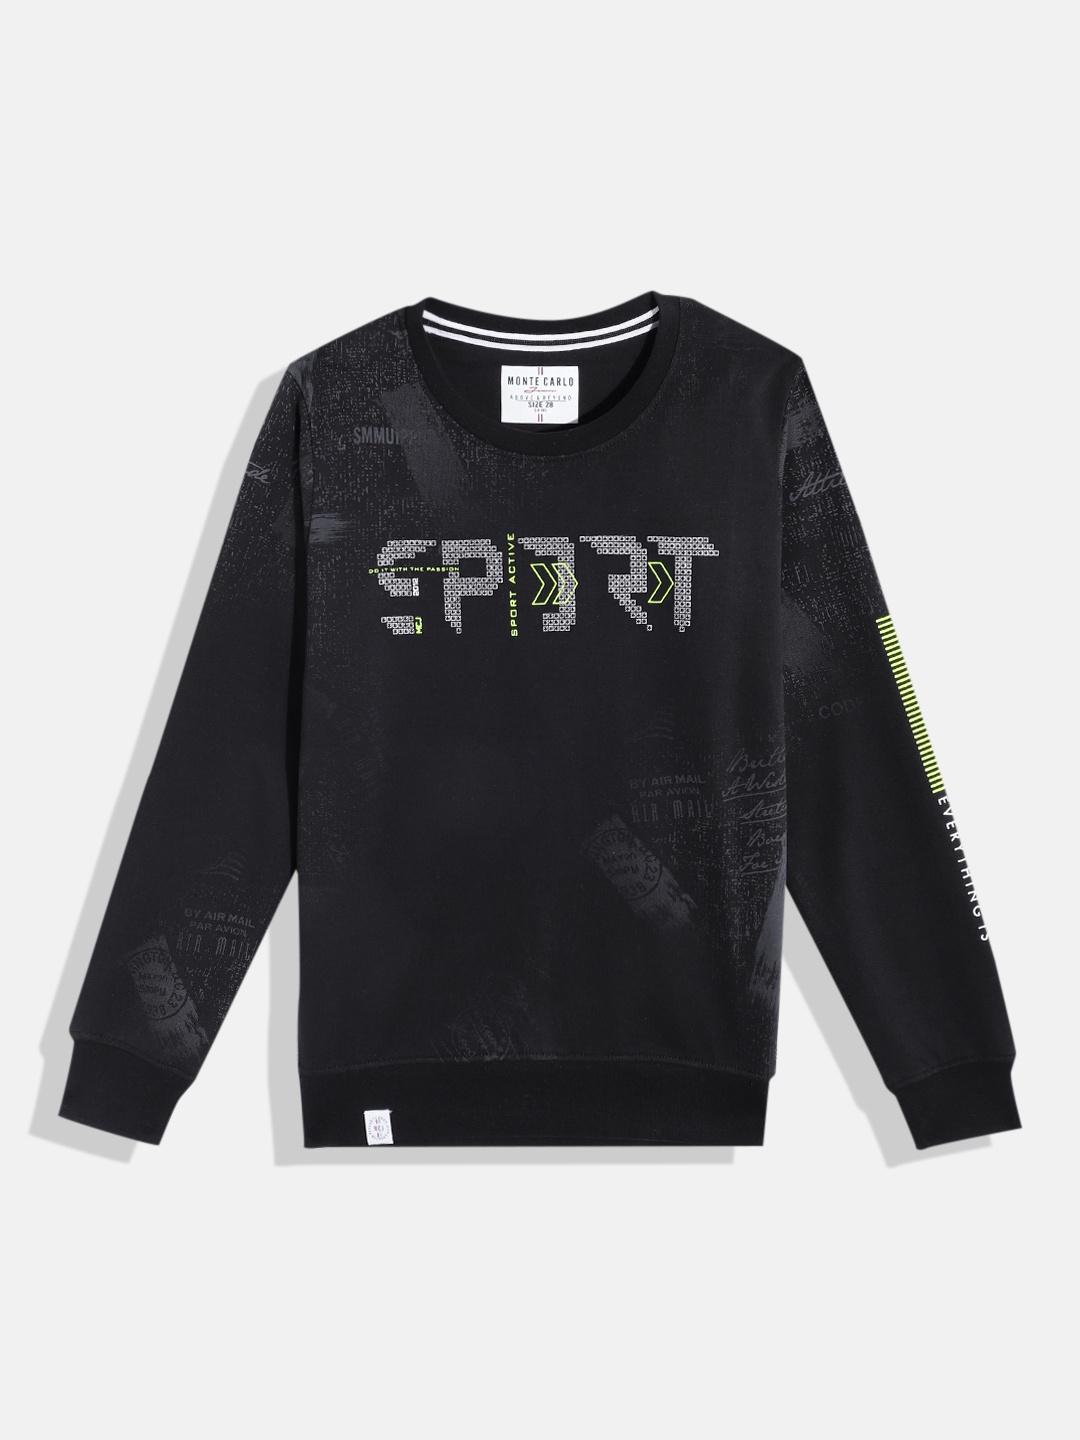 

Monte Carlo Boys Typography Printed Pure Cotton Sweatshirt, Black